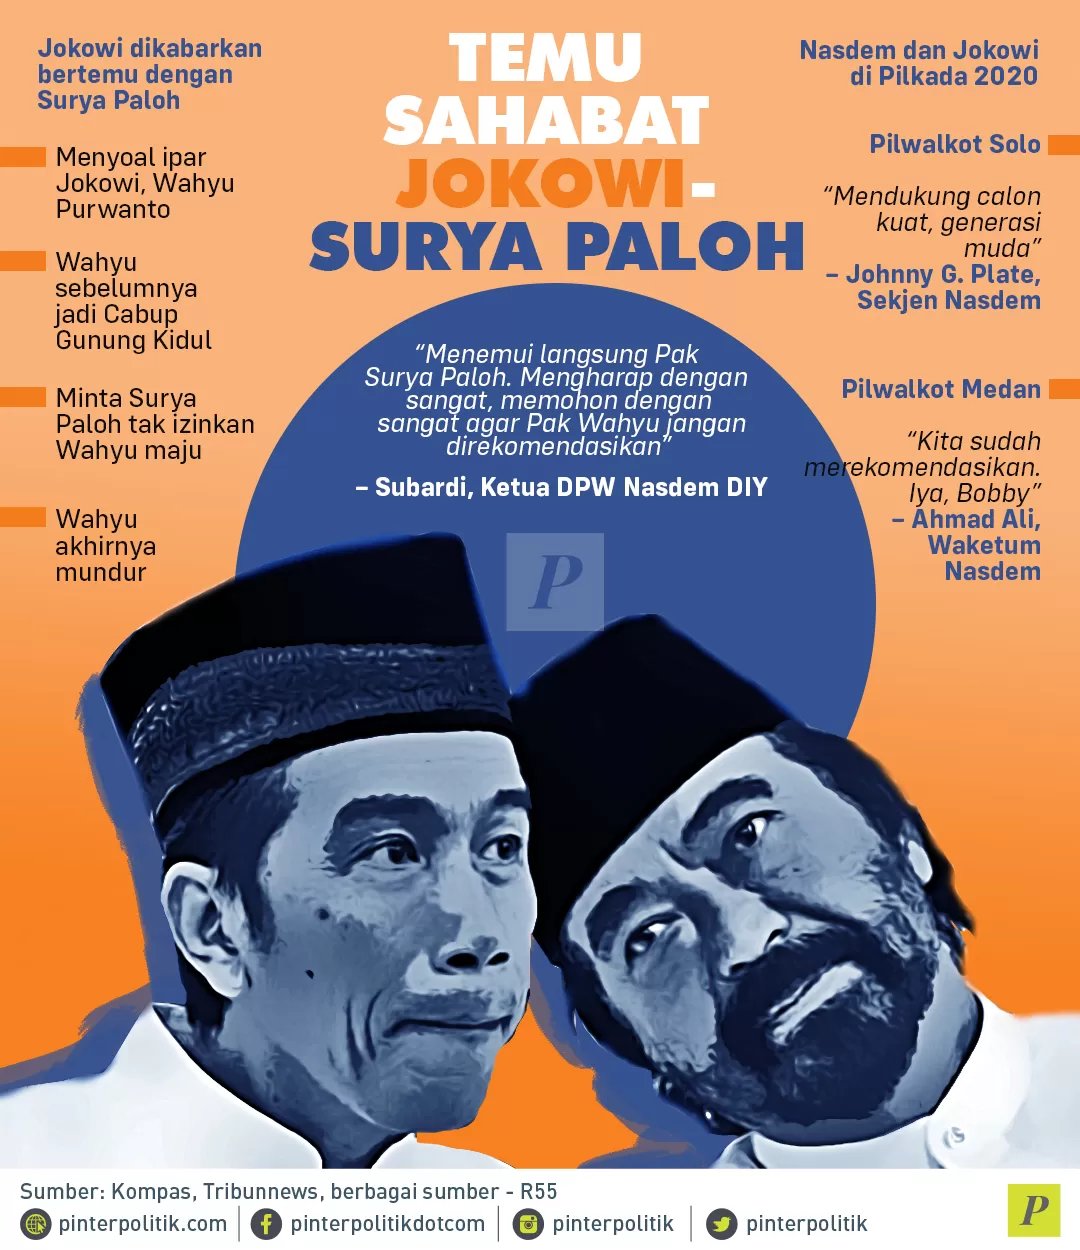 Temu Sahabat Jokowi-Surya Paloh